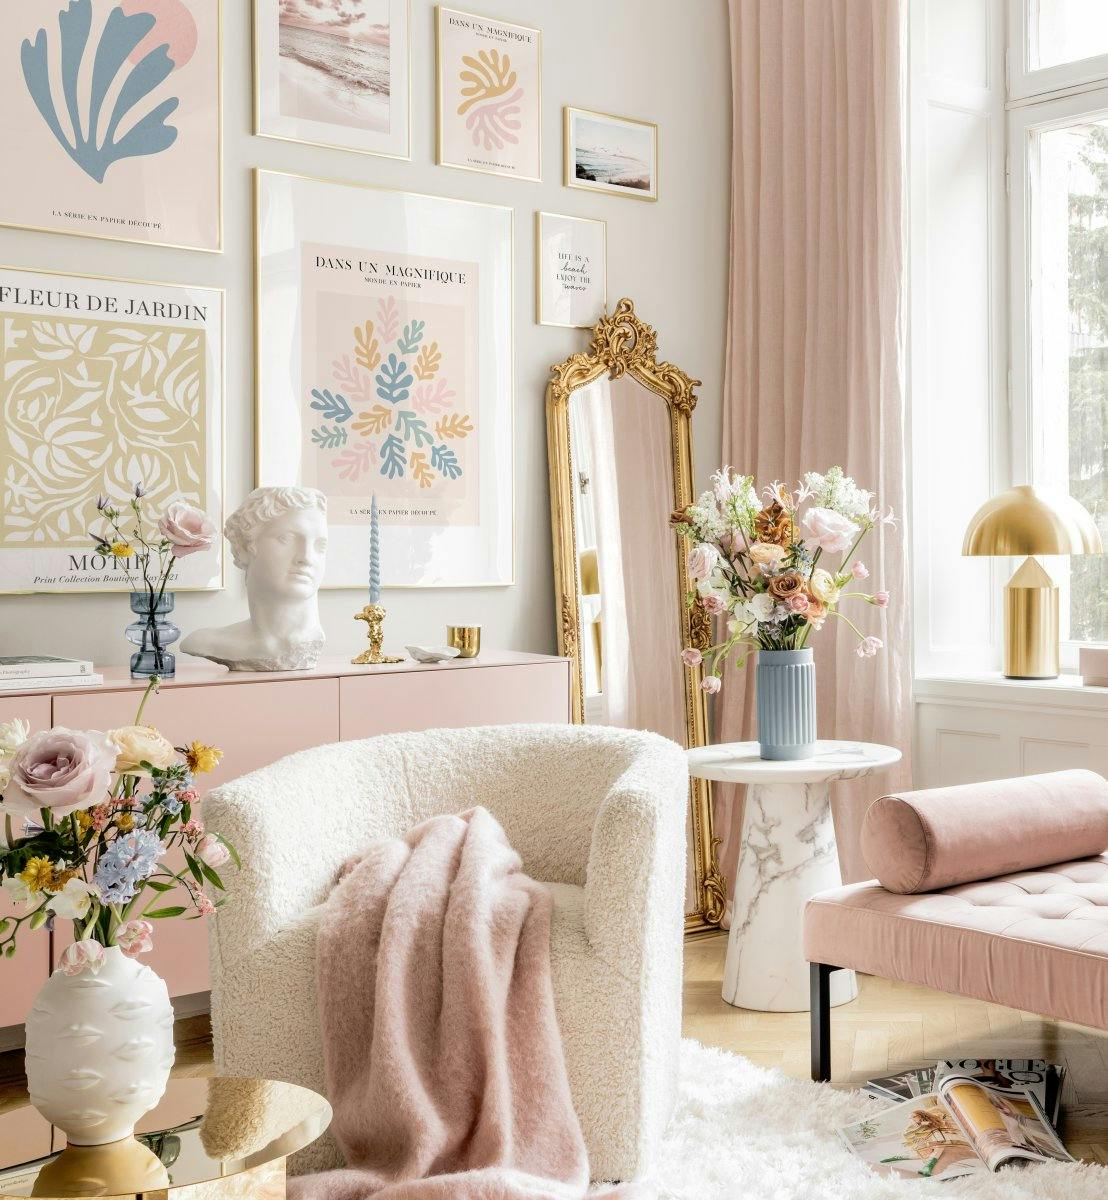 Decor sufragerie cu inspirație Matisse tablouri grafice și rame aurii